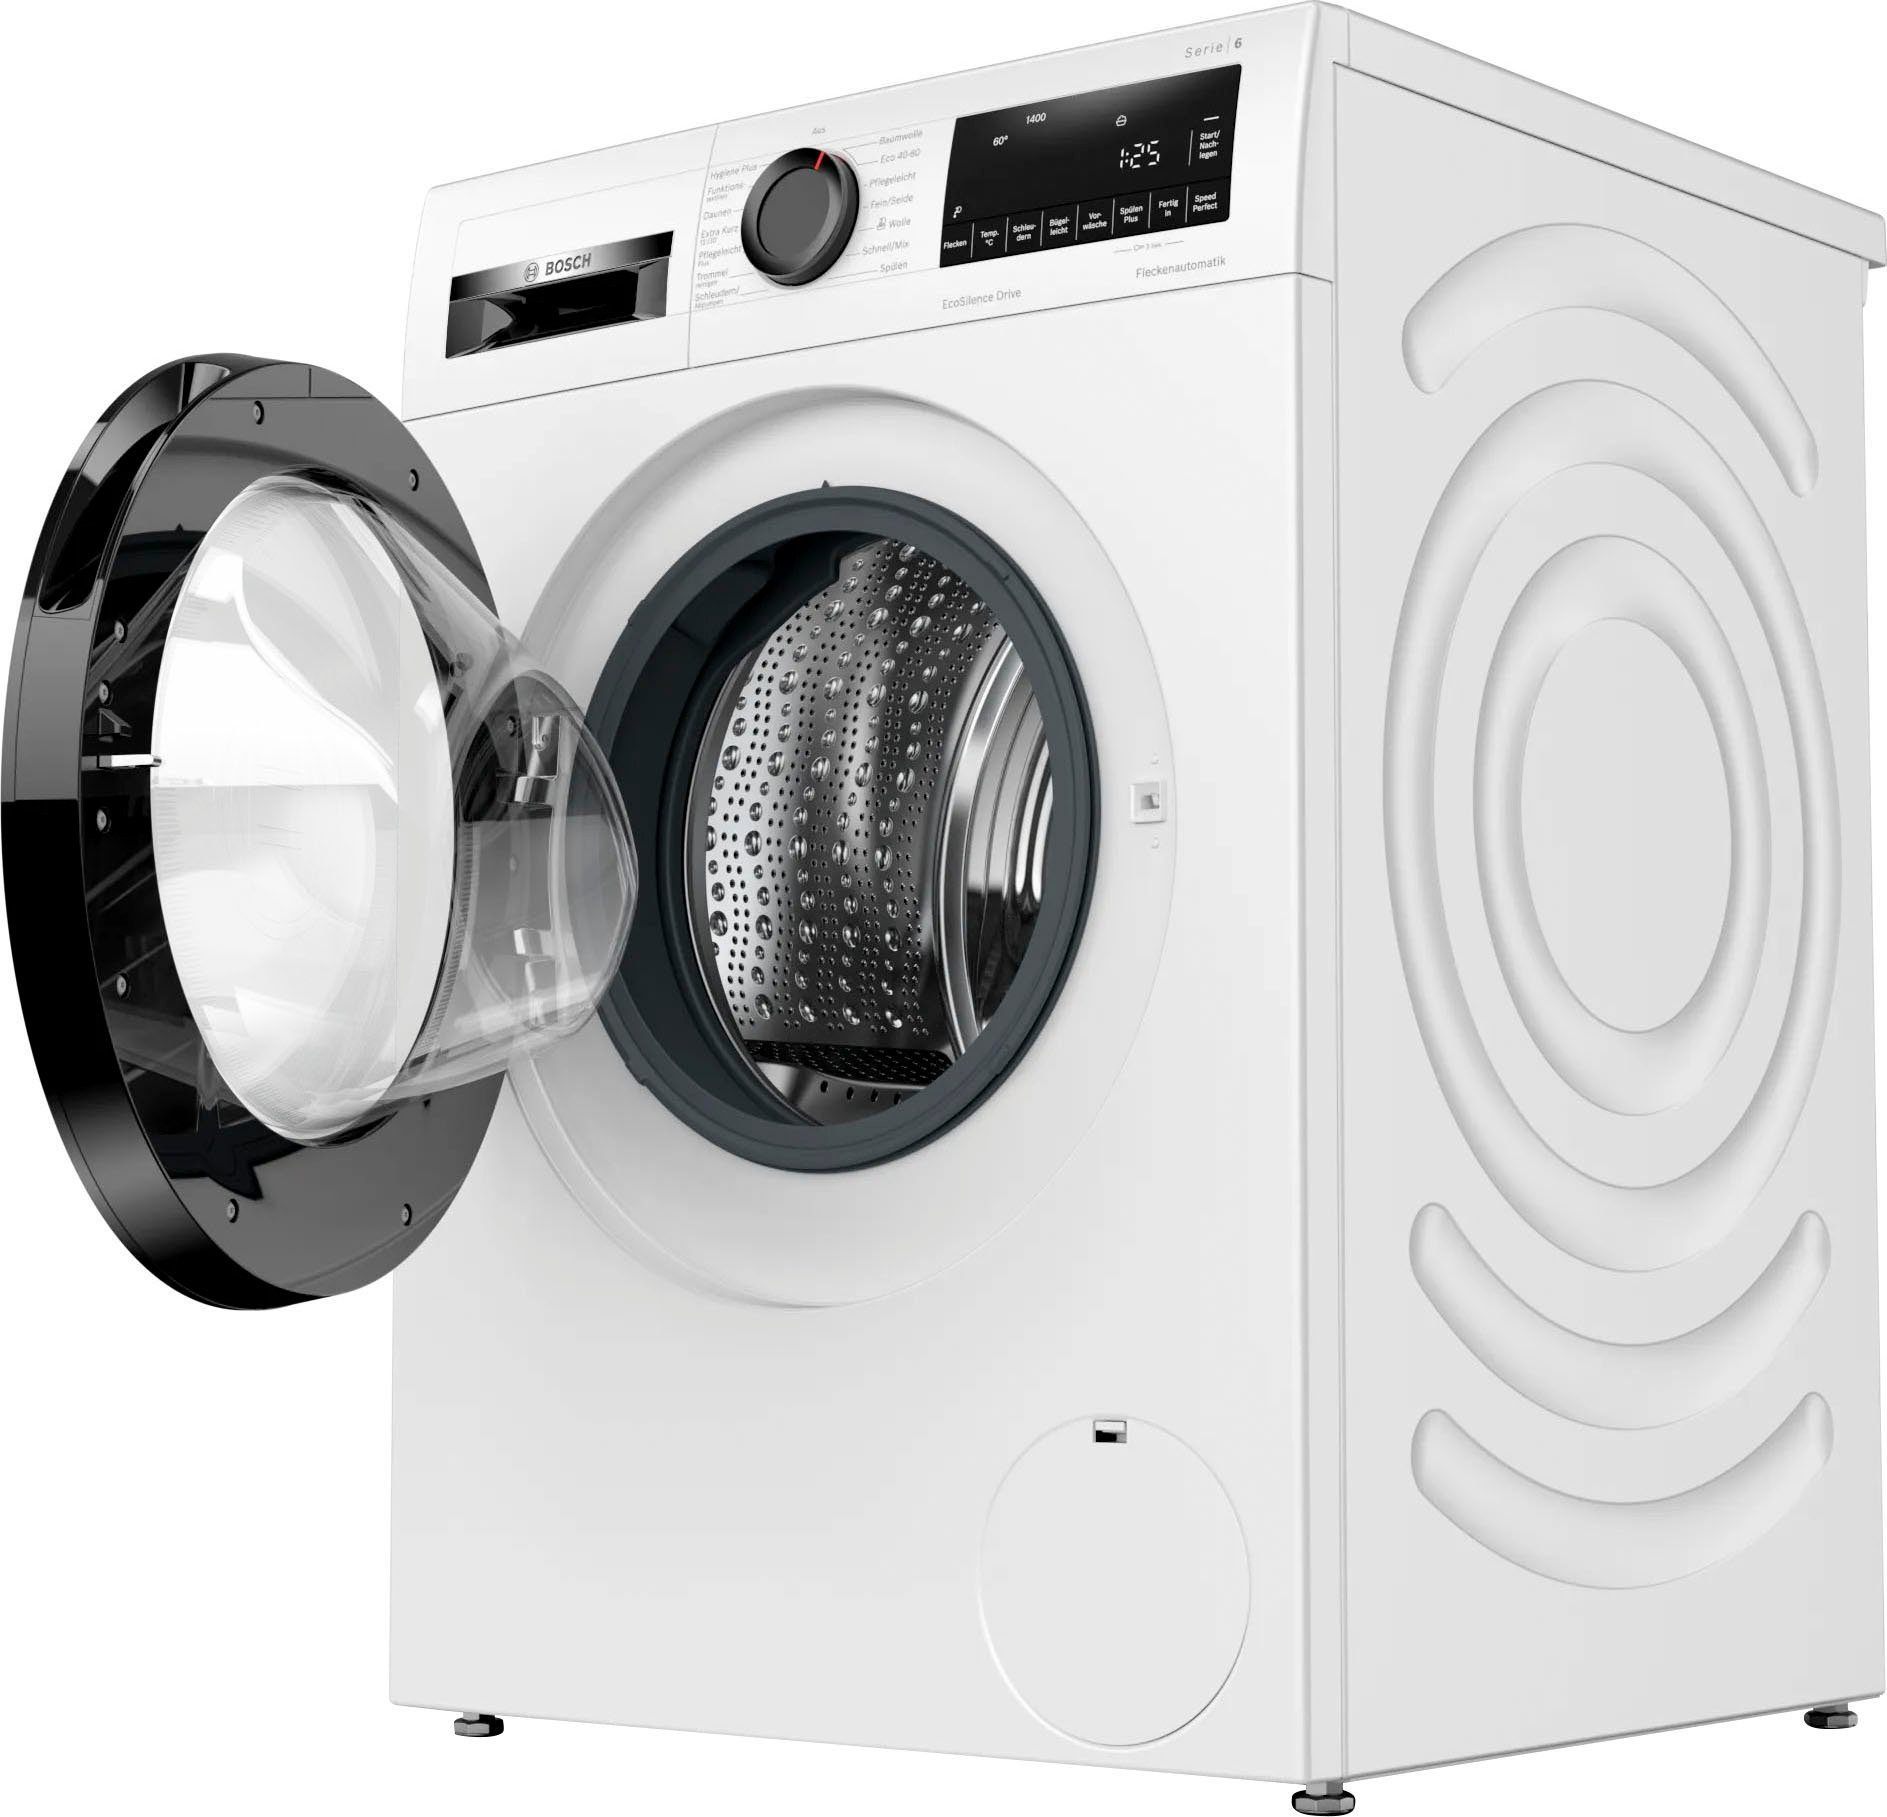 BOSCH Waschmaschine WGG154021, 10 kg, U/min 1400